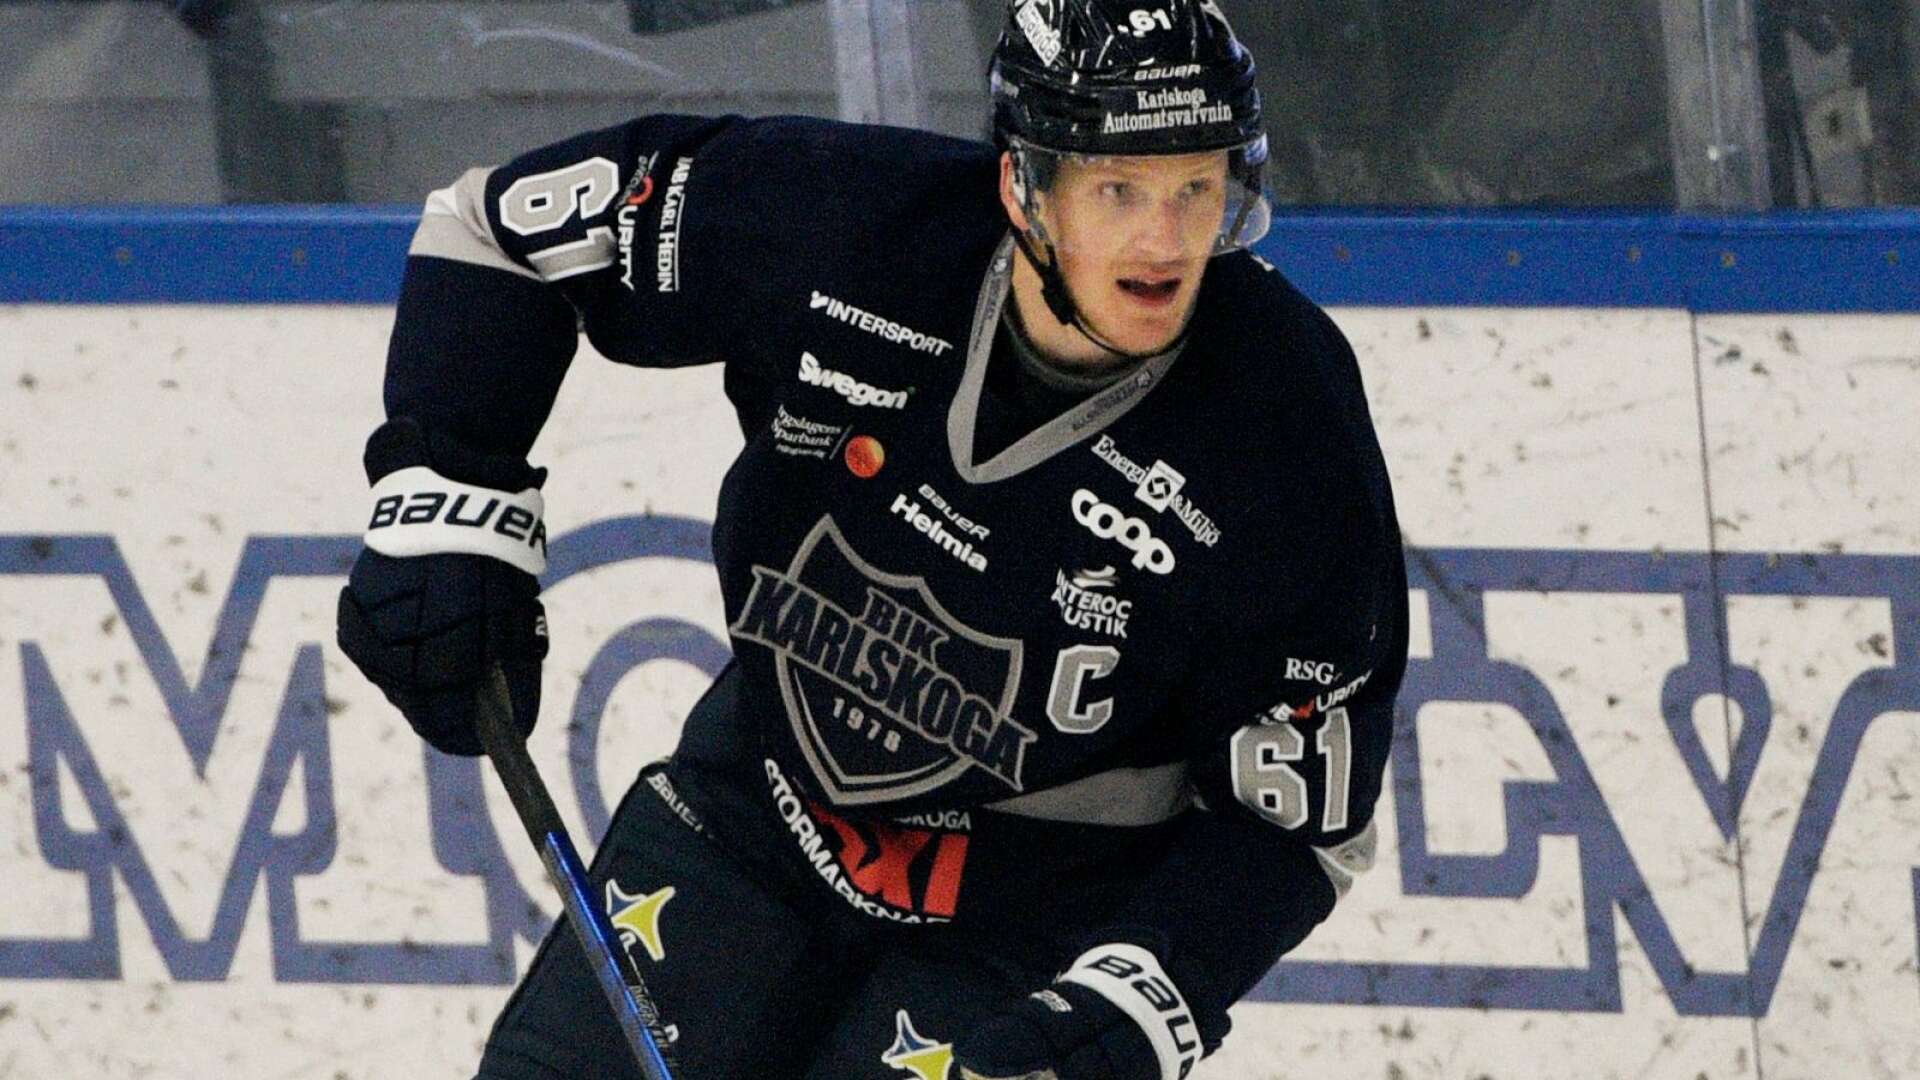 Det blir ingen semifinal för Mikael ”Daggen” Eriksson.